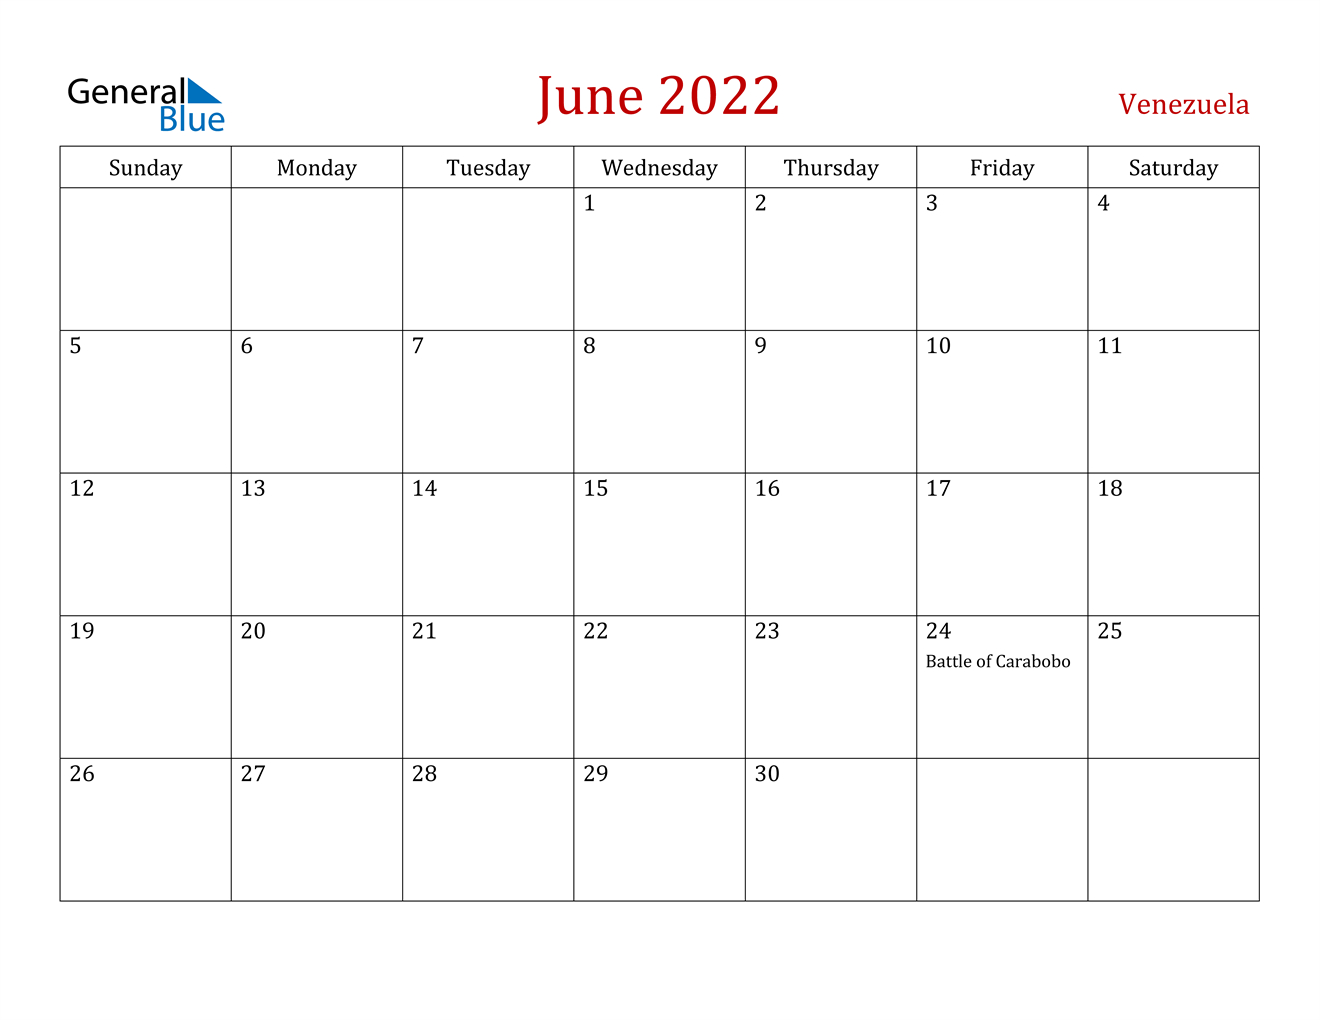 June 2022 Calendar - Venezuela